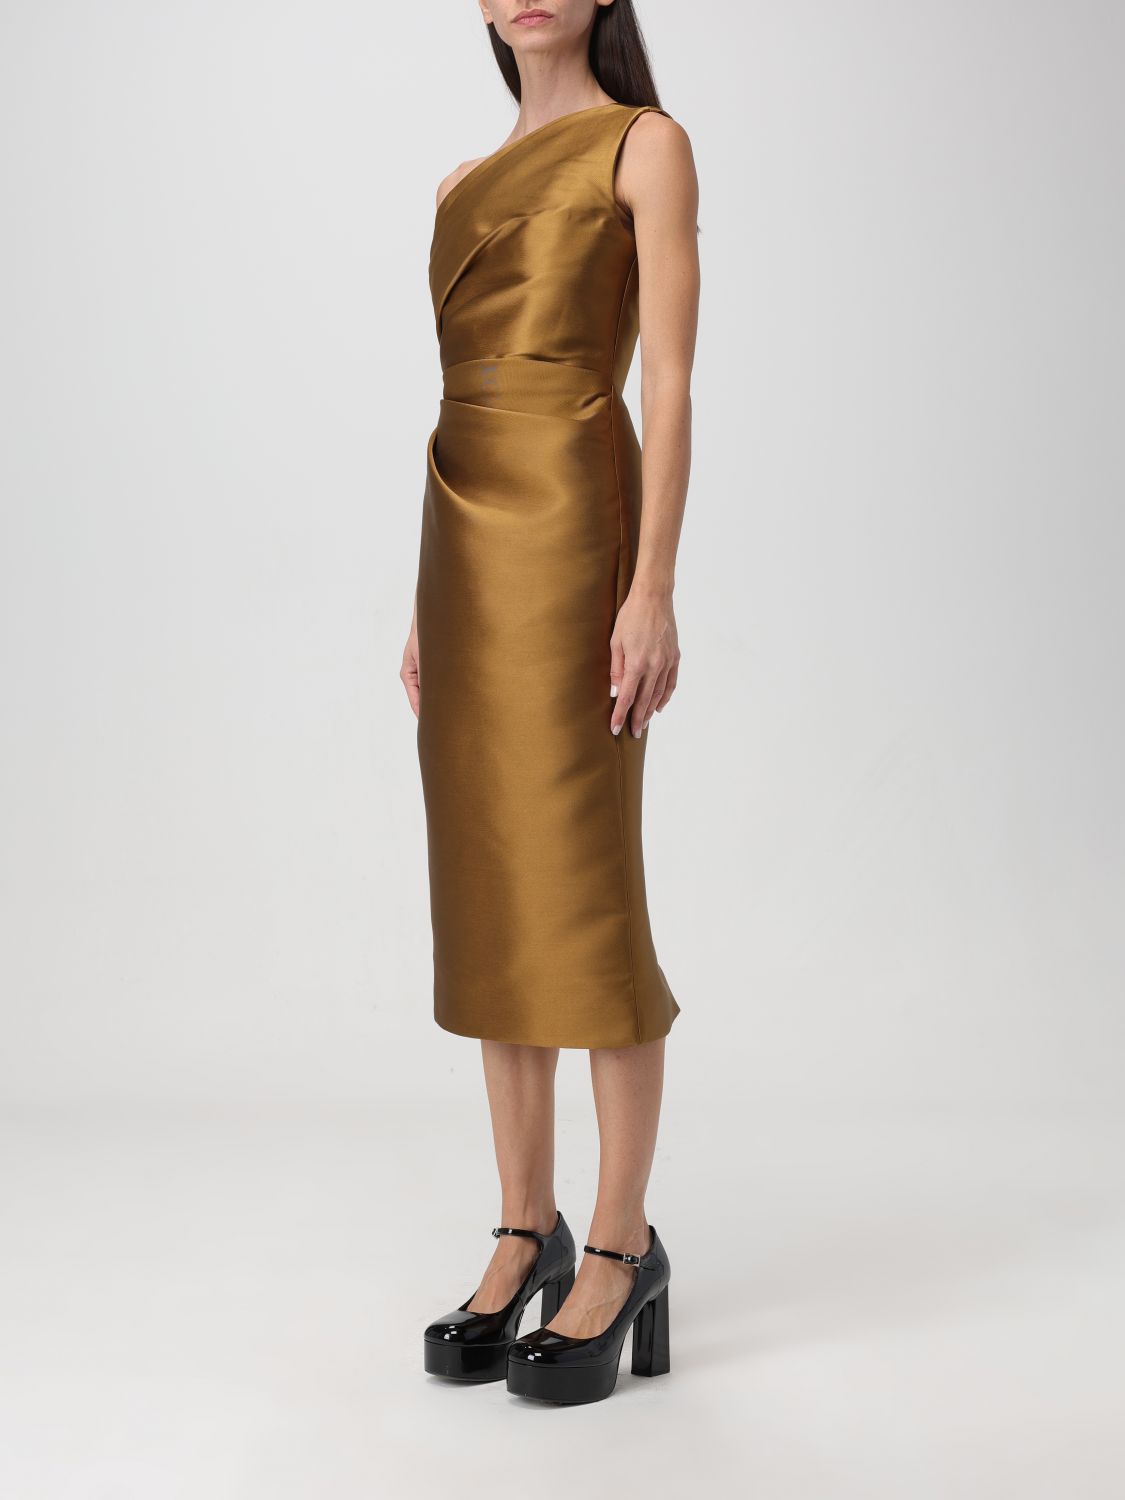 Solace London Dress Woman Gold Woman